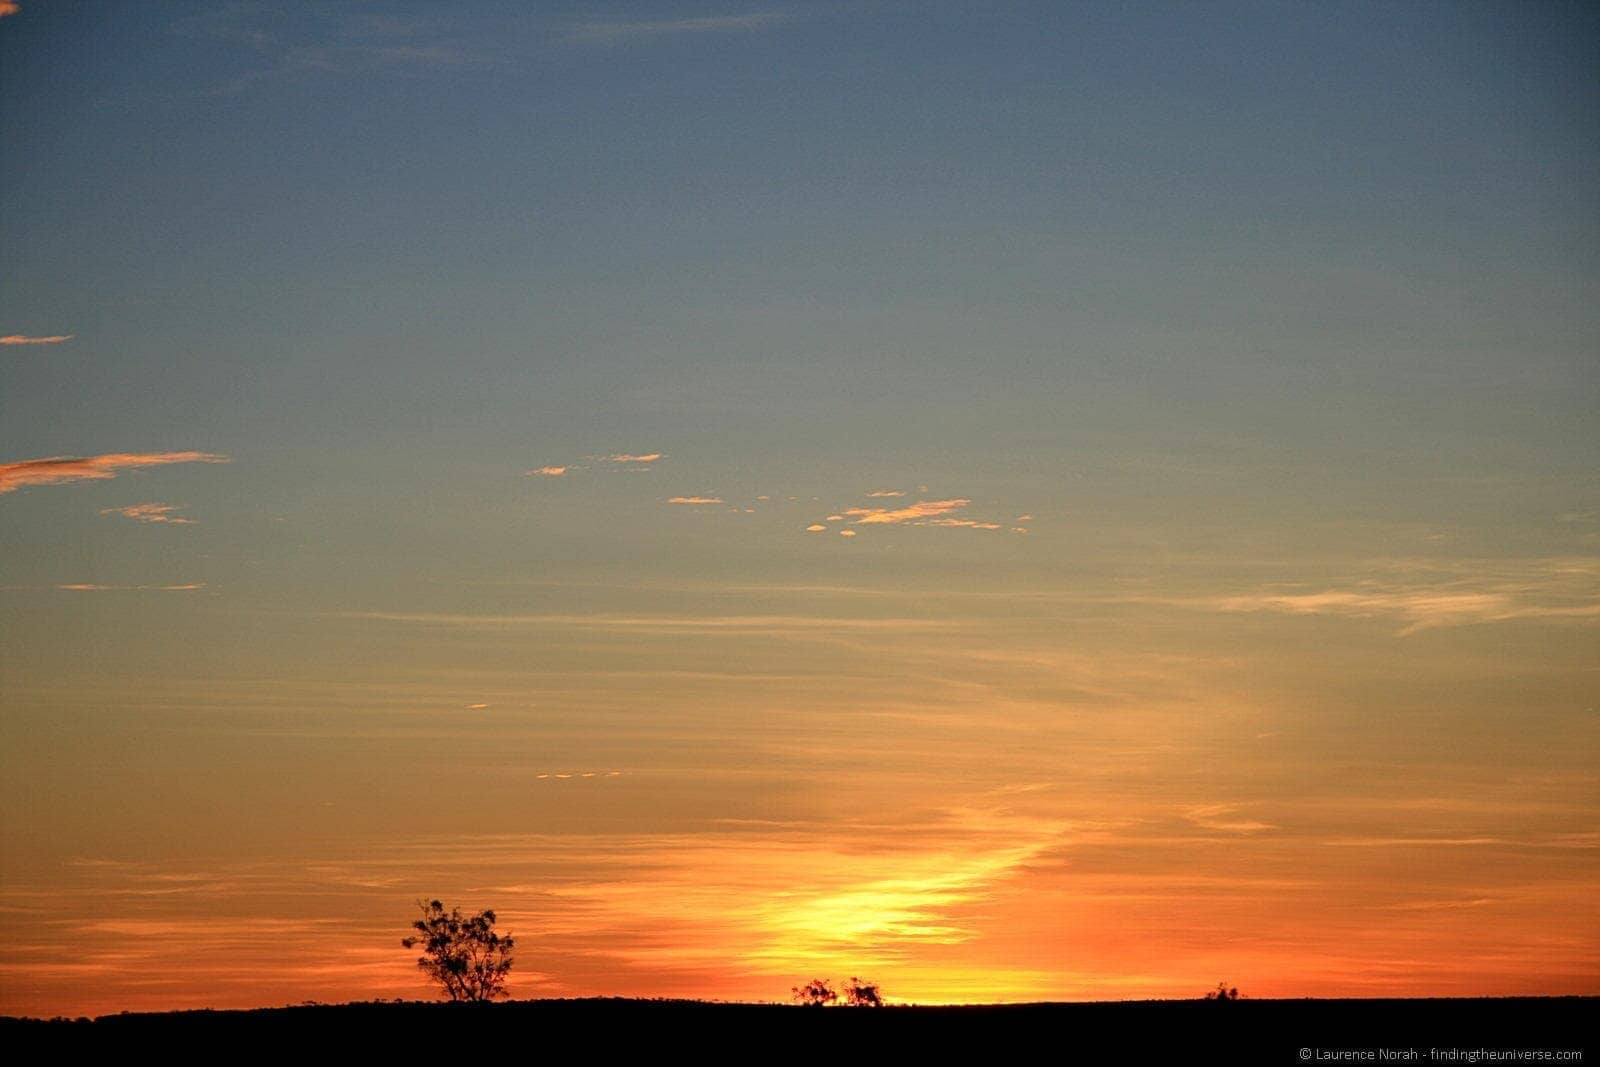 Outback sunset - wide open apertureJPG